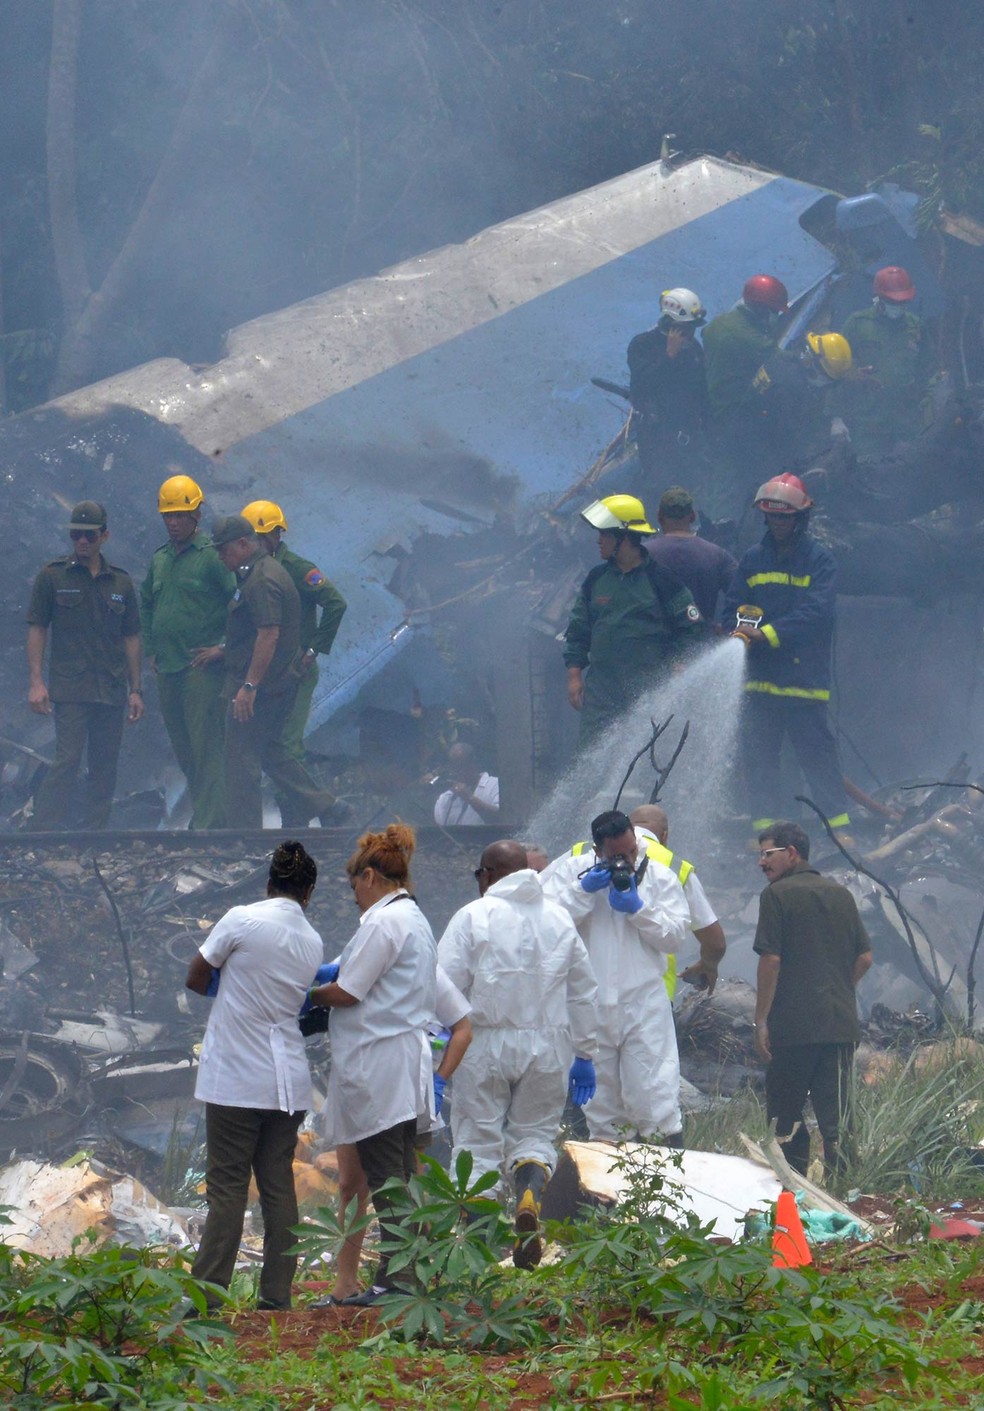 Equipes de resgate trabalham no local onde um aviÃ£o com 113 pessoas a bordo caiu logo apÃ³s decolagem em Havana, Cuba (Foto: Adalberto Roque/AFP)